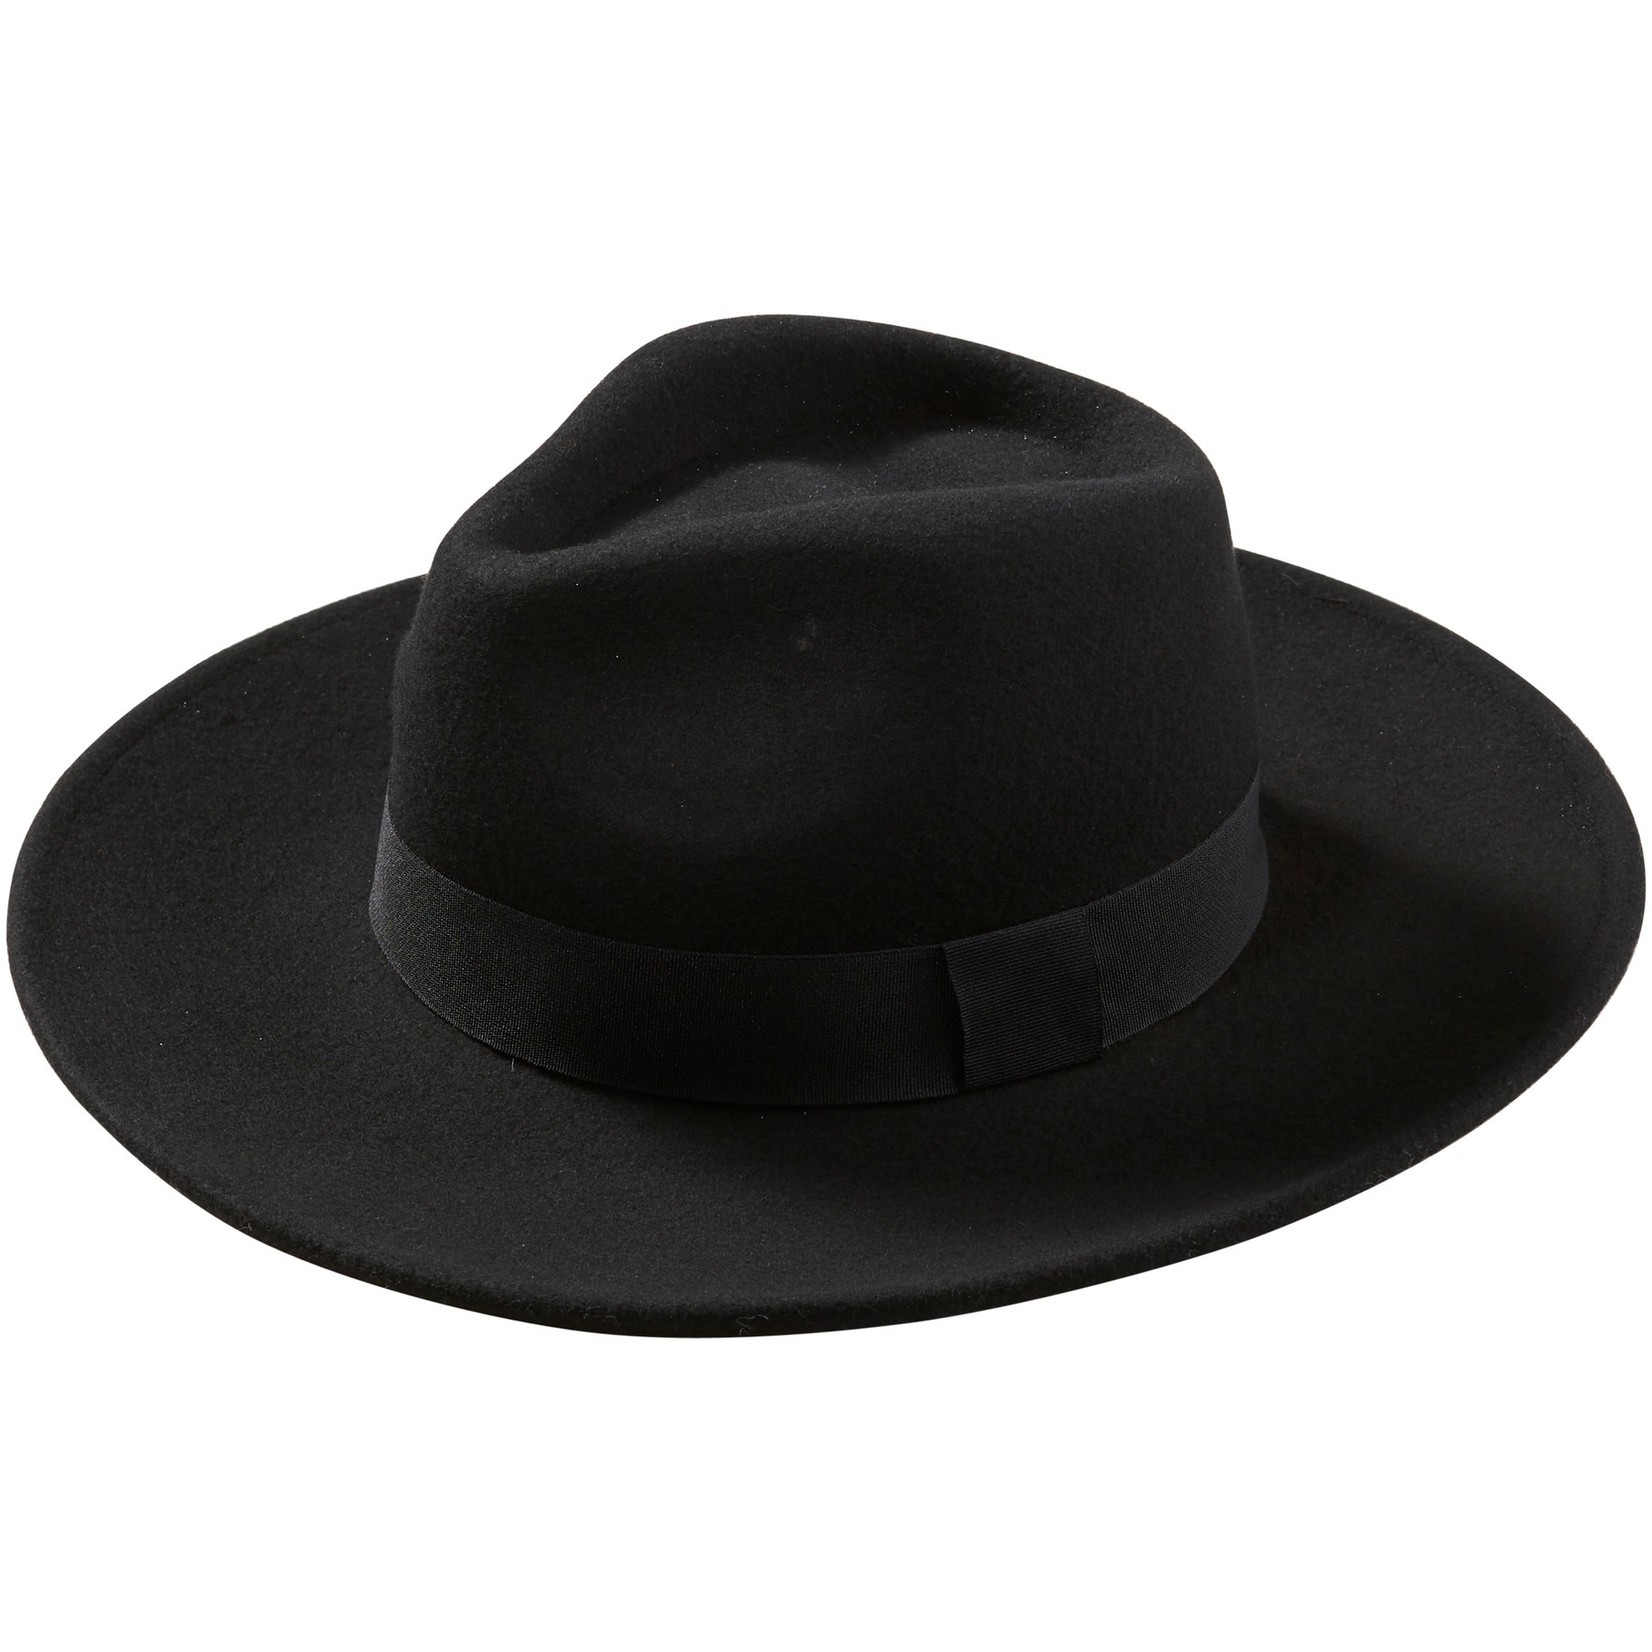 Hadley Wren Hilary Wool Panama Hat- Black